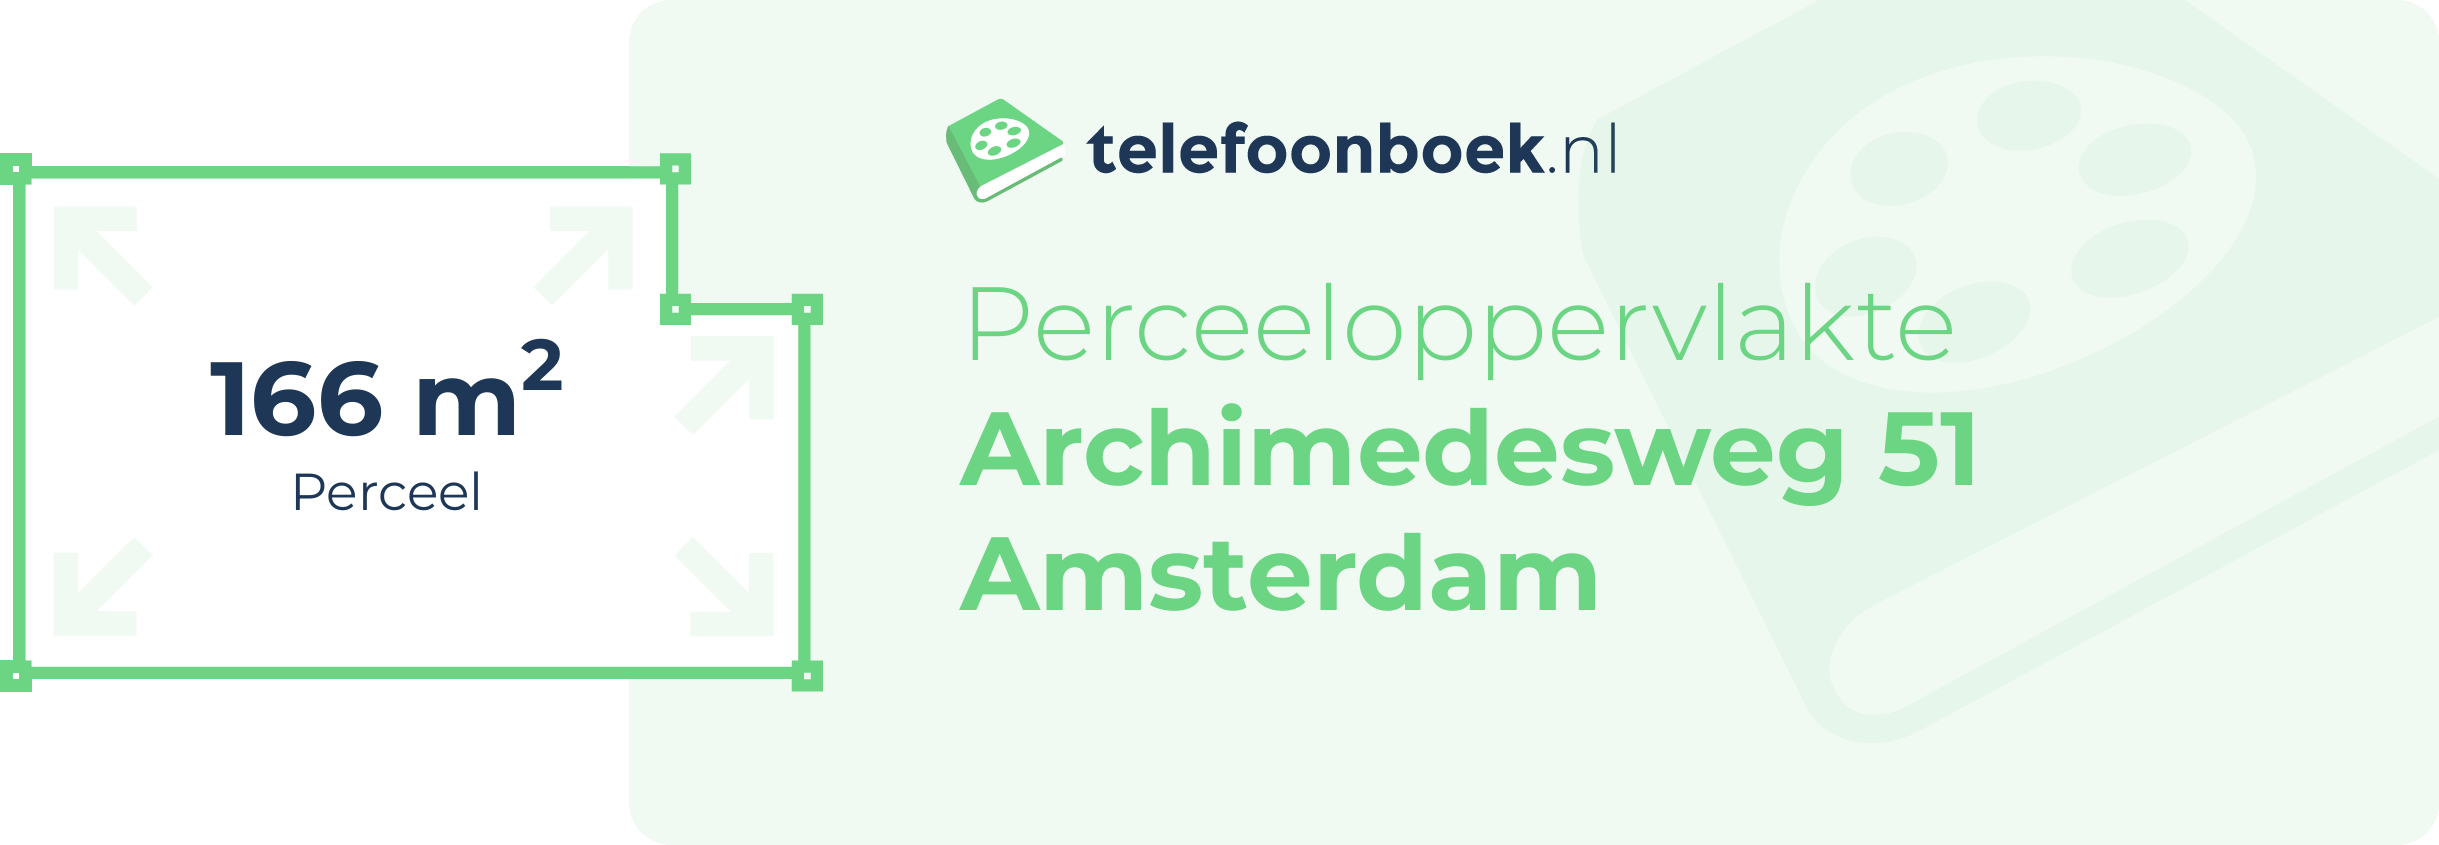 Perceeloppervlakte Archimedesweg 51 Amsterdam